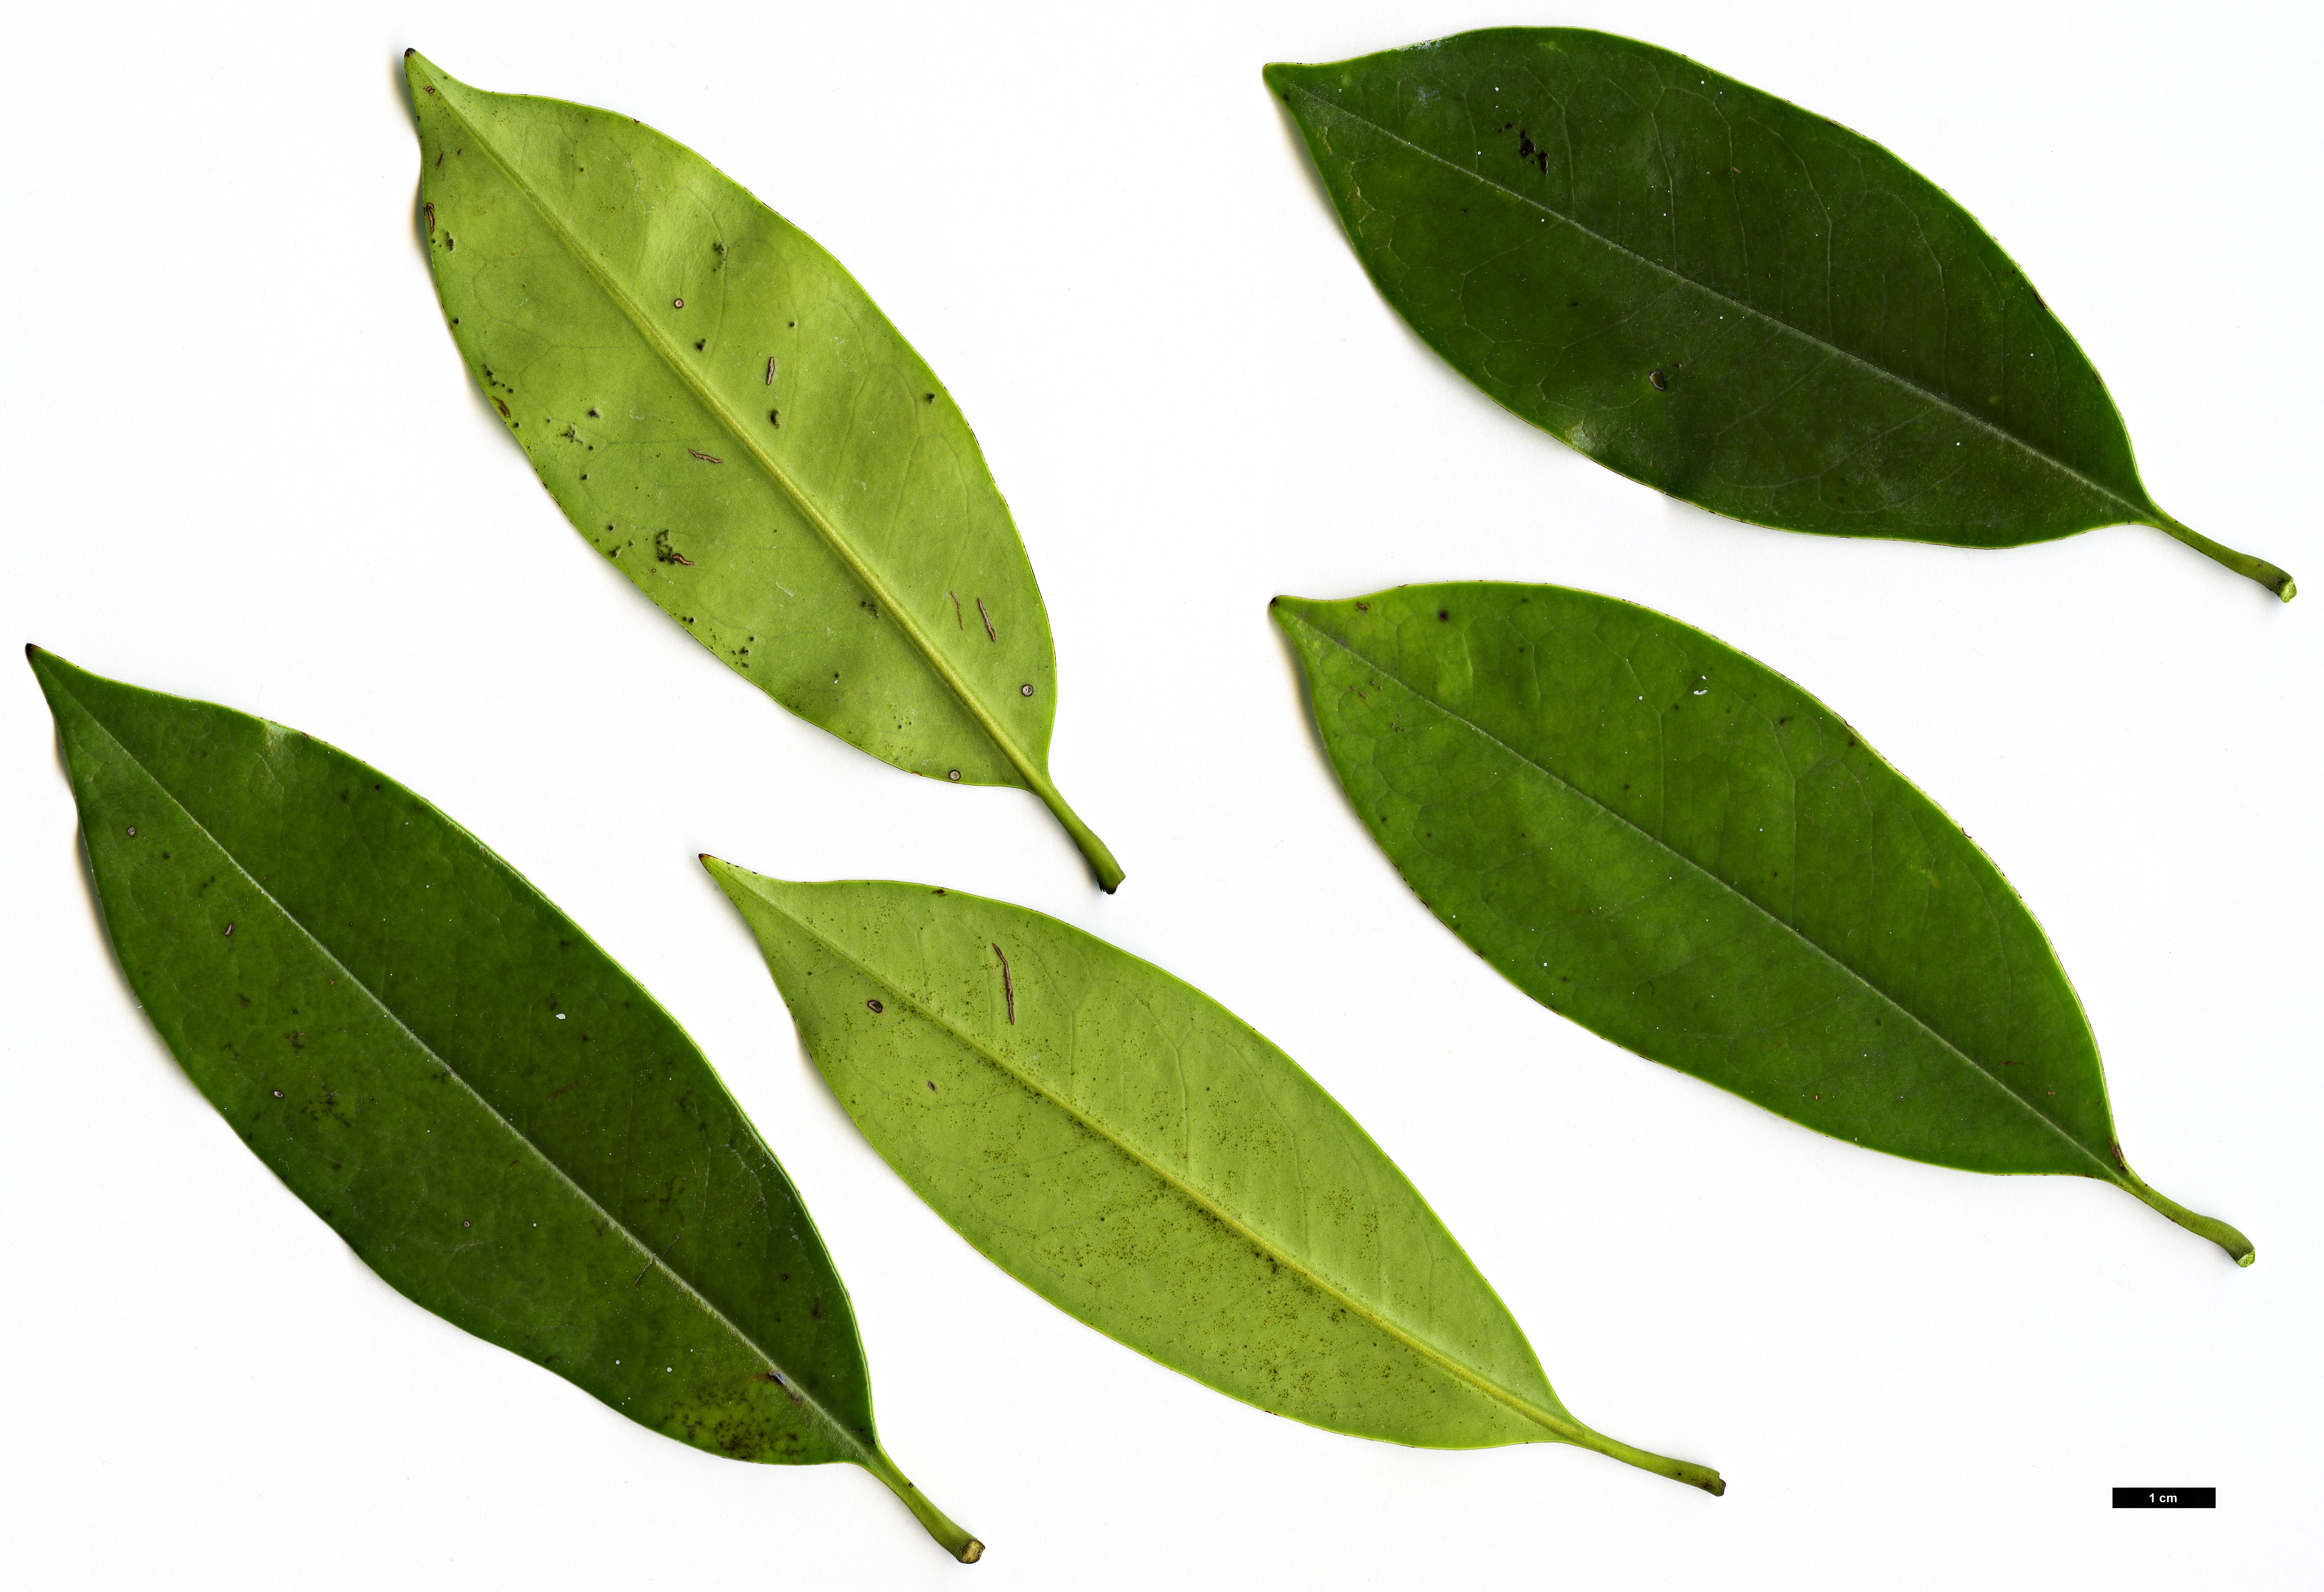 High resolution image: Family: Magnoliaceae - Genus: Magnolia - Taxon: nitida